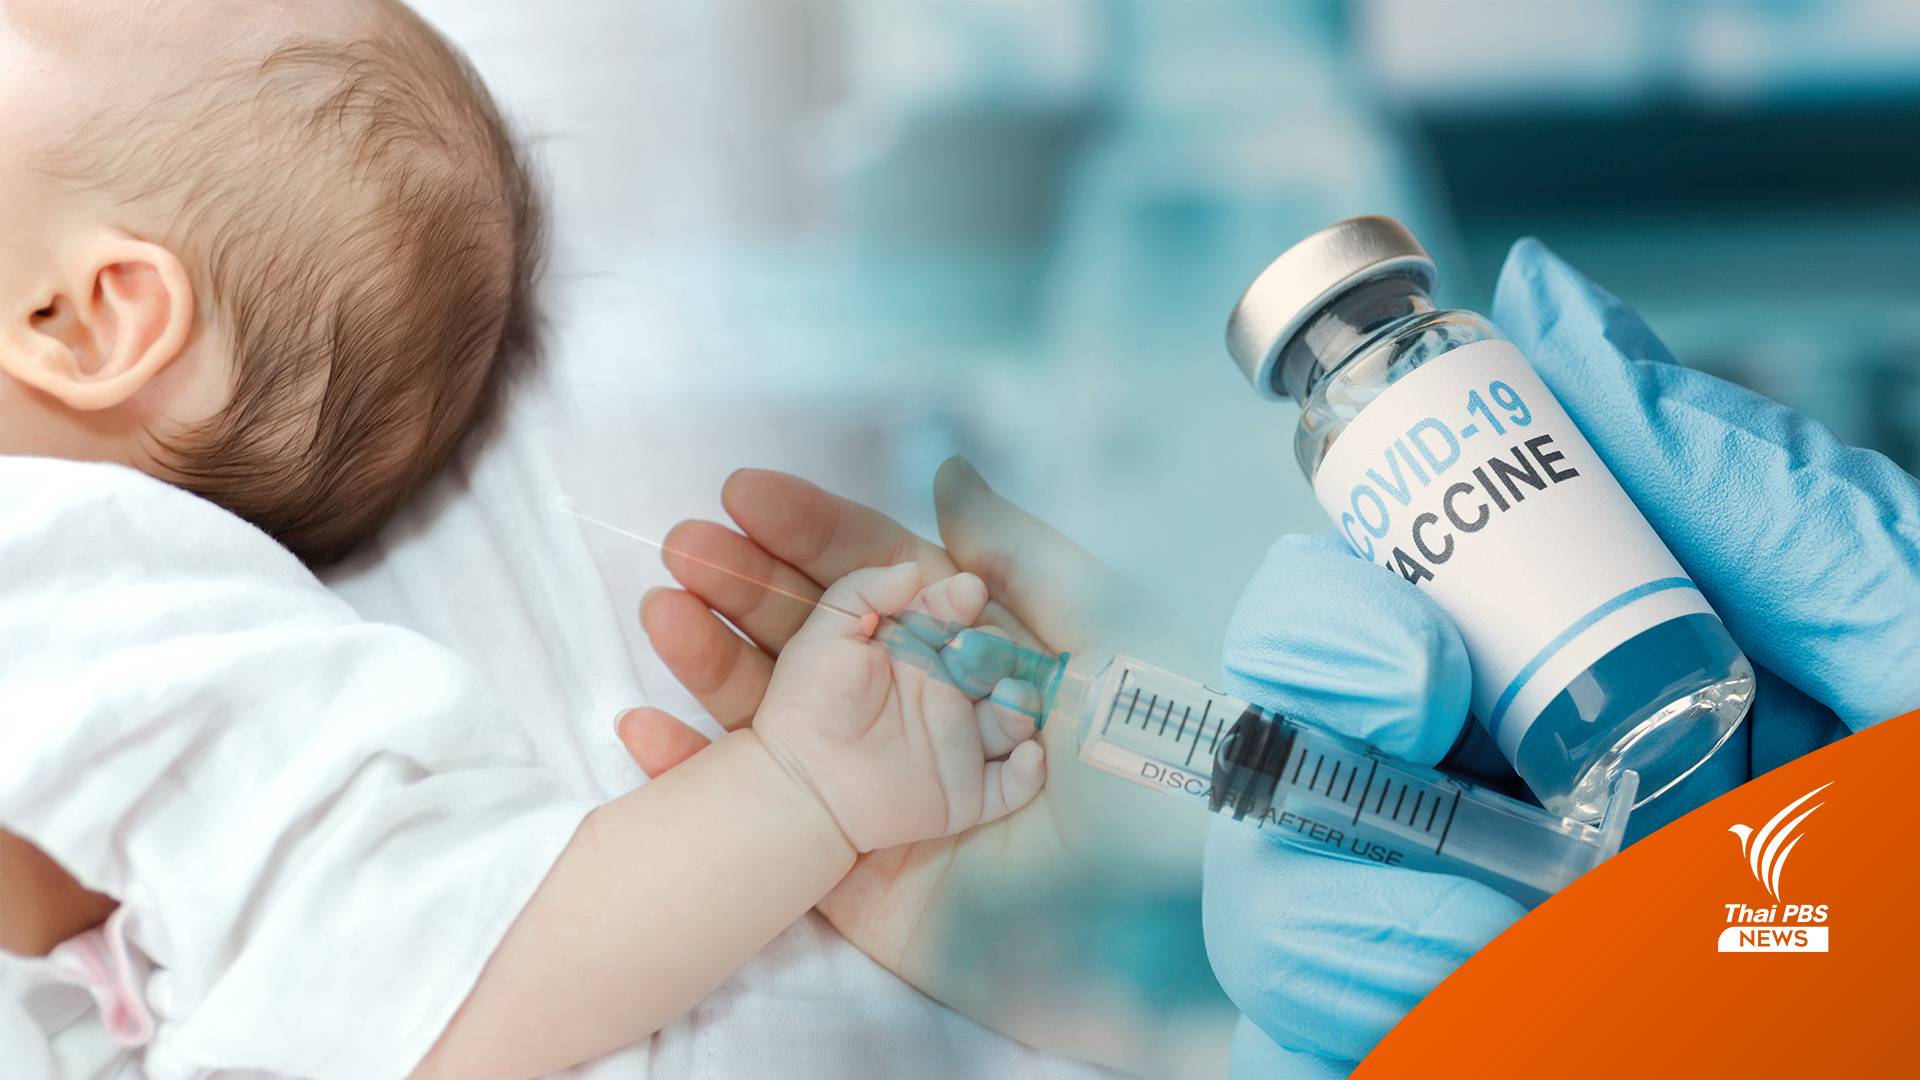 ศบค.ไฟเขียว วัคซีนไฟเซอร์สำหรับเด็ก 6 เดือน - 5 ปี 3.6 ล้านโดส